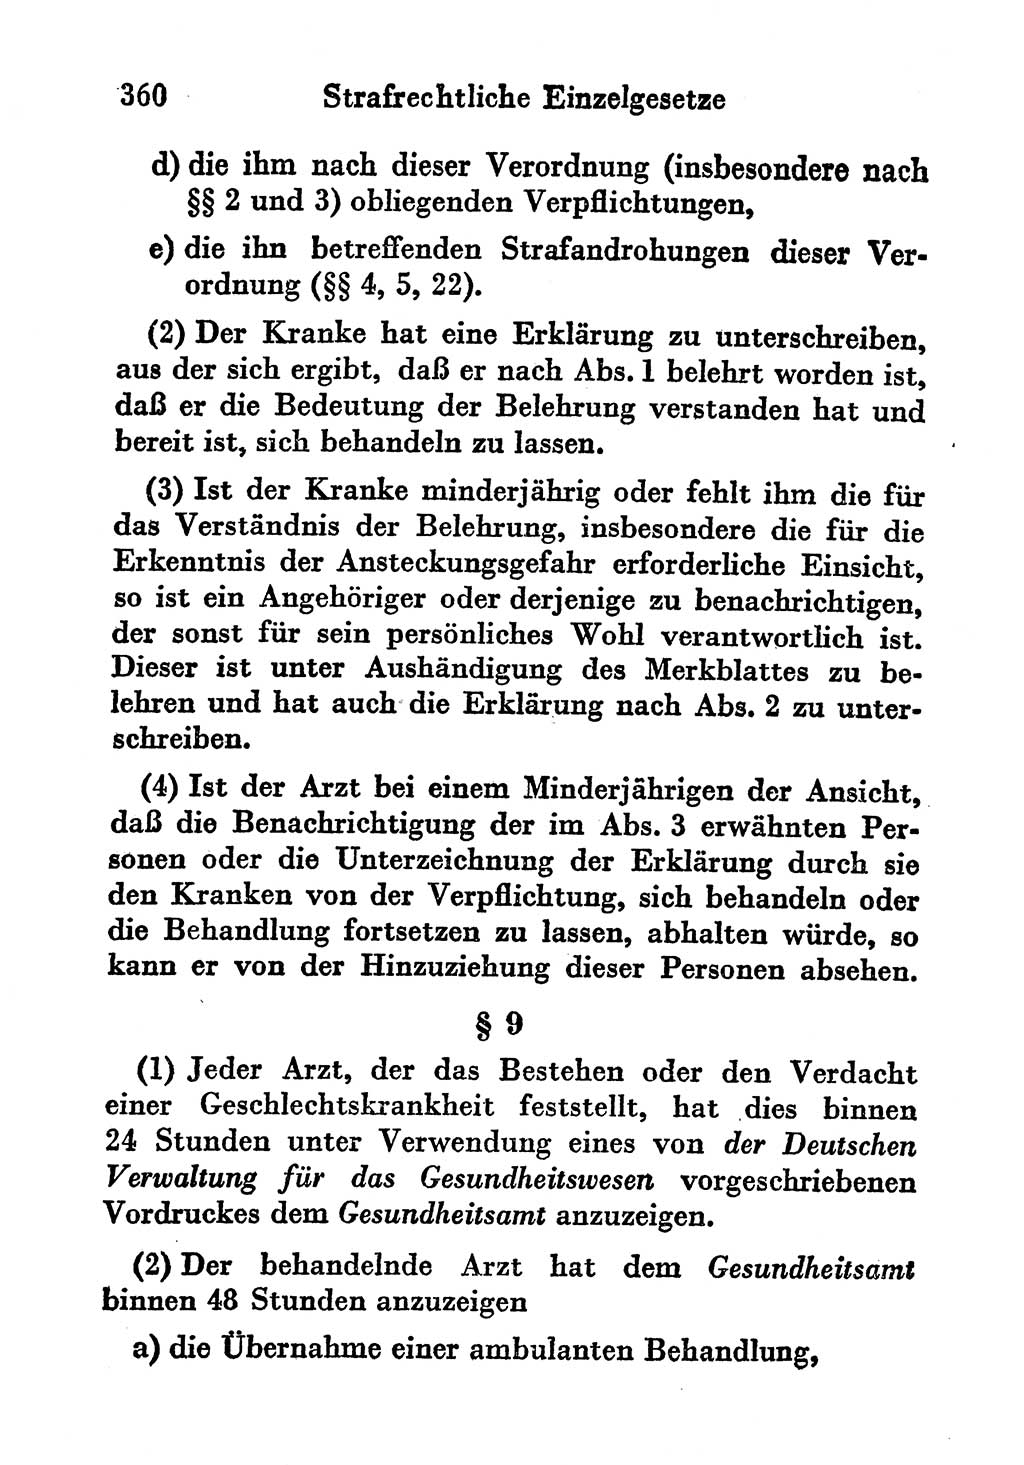 Strafgesetzbuch (StGB) und andere Strafgesetze [Deutsche Demokratische Republik (DDR)] 1956, Seite 360 (StGB Strafges. DDR 1956, S. 360)